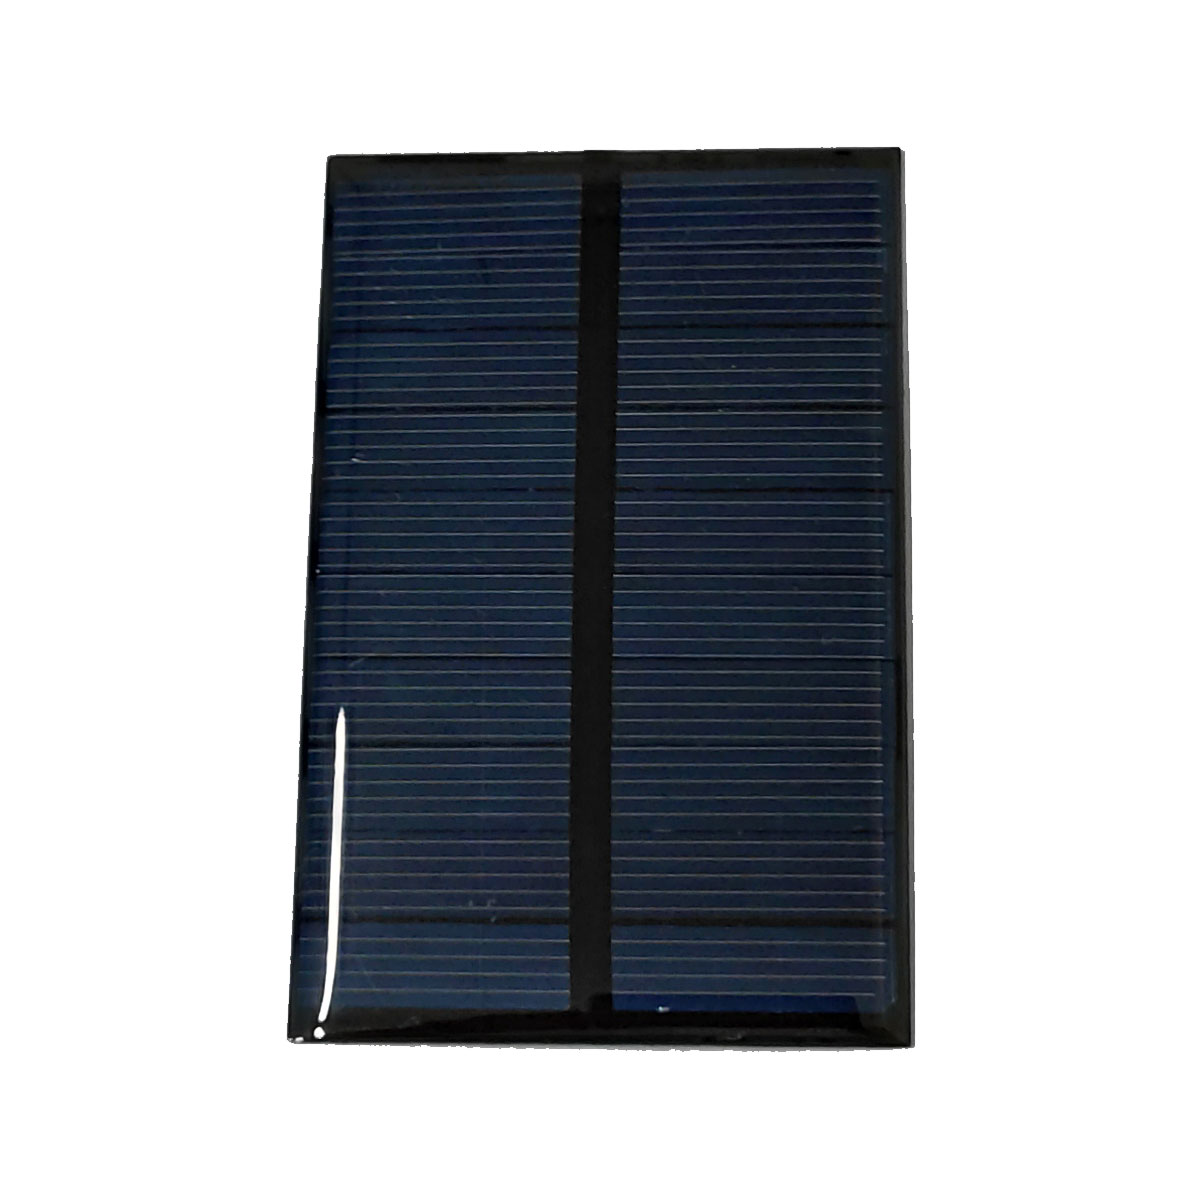 Mini Painel / Placa / Célula de Energia Solar Fotovoltaica 5v 200mA 1w com Fio Soldado